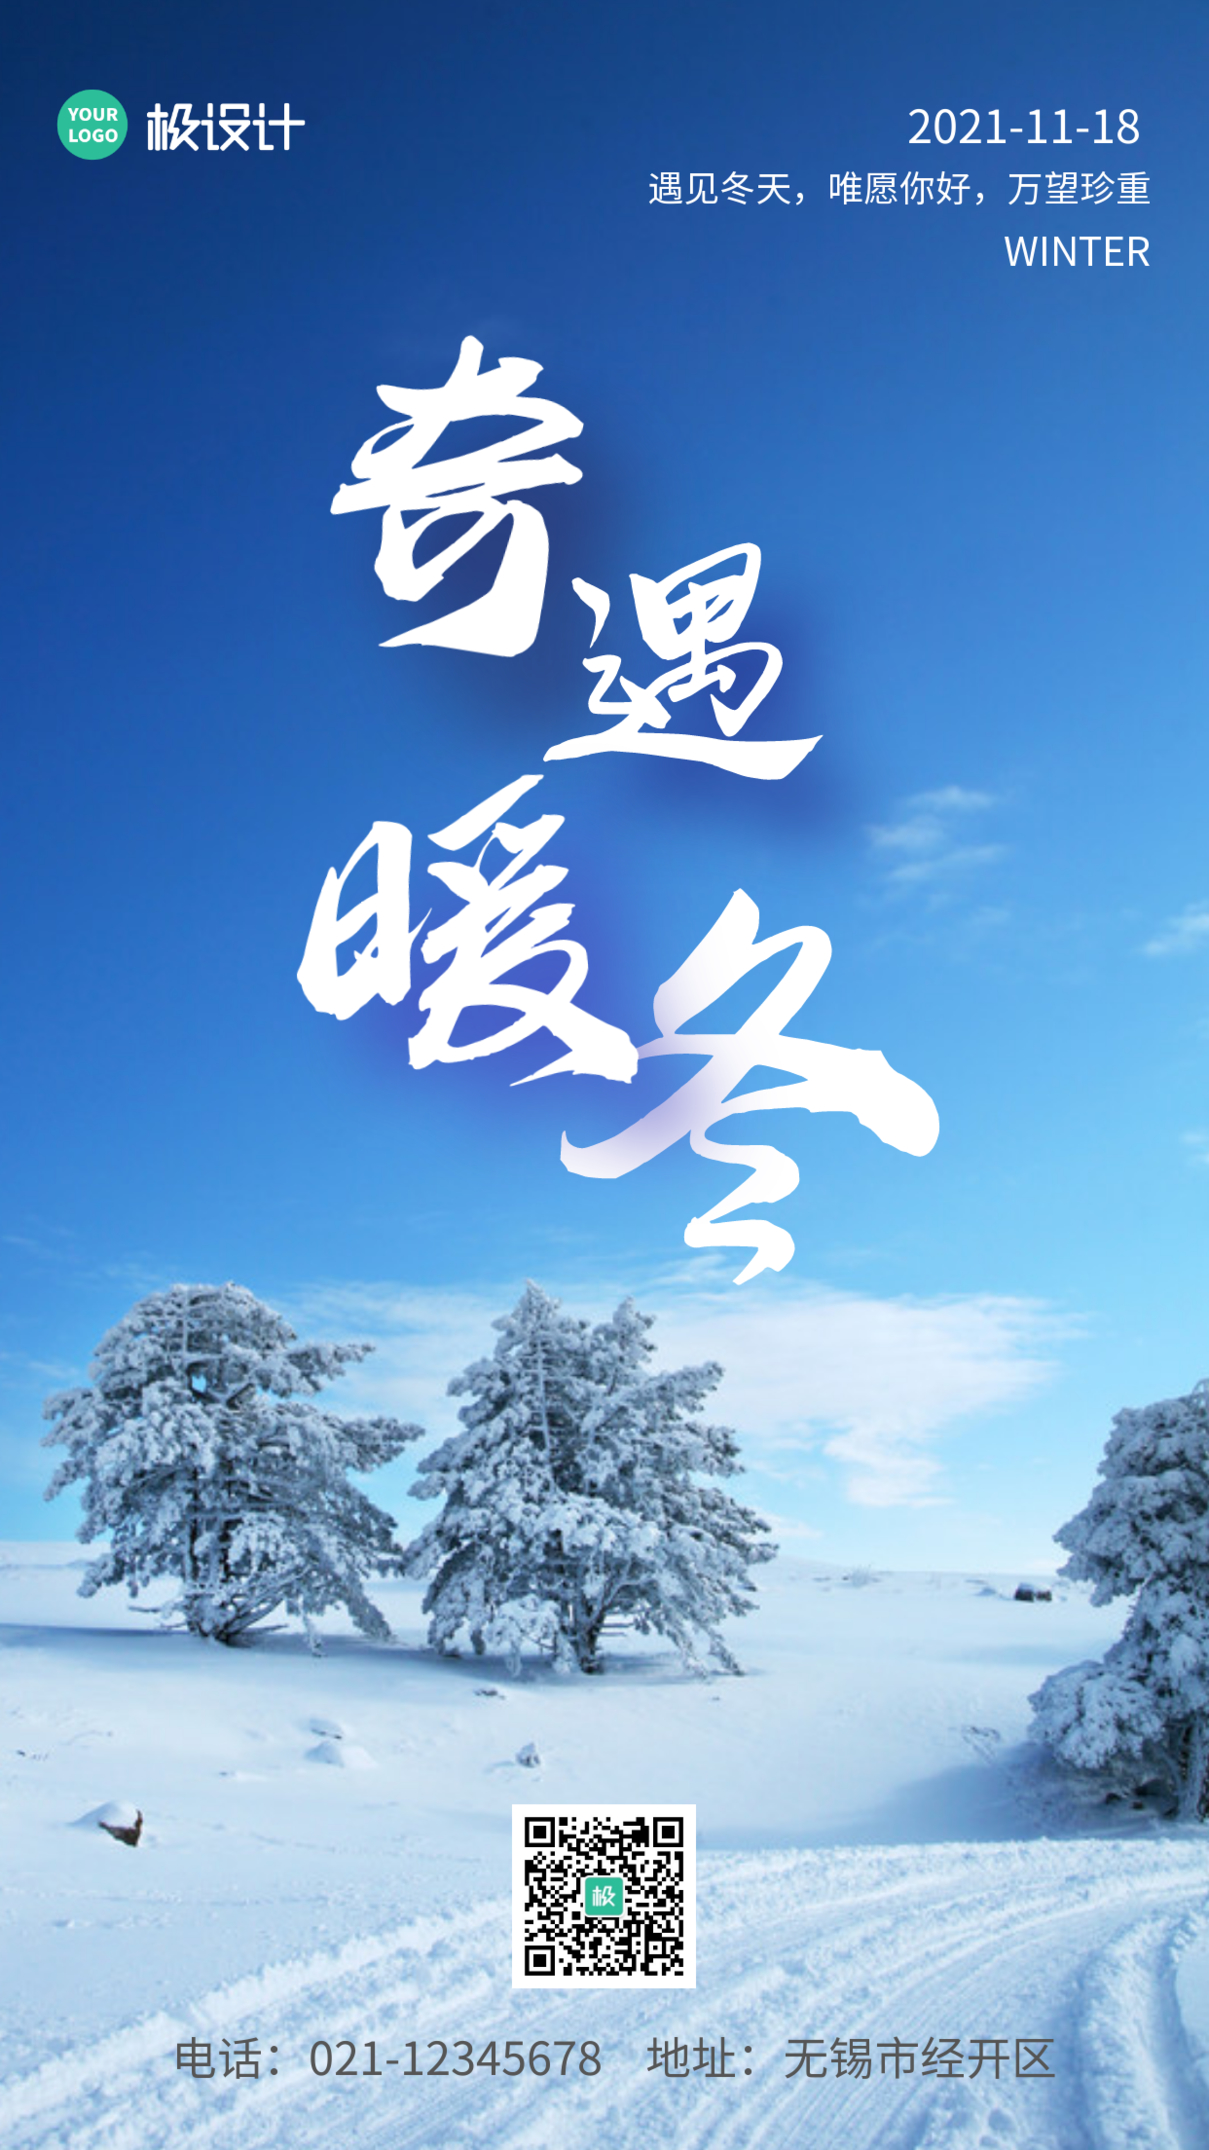 奇遇暖冬蓝色简约创意大气手机海报